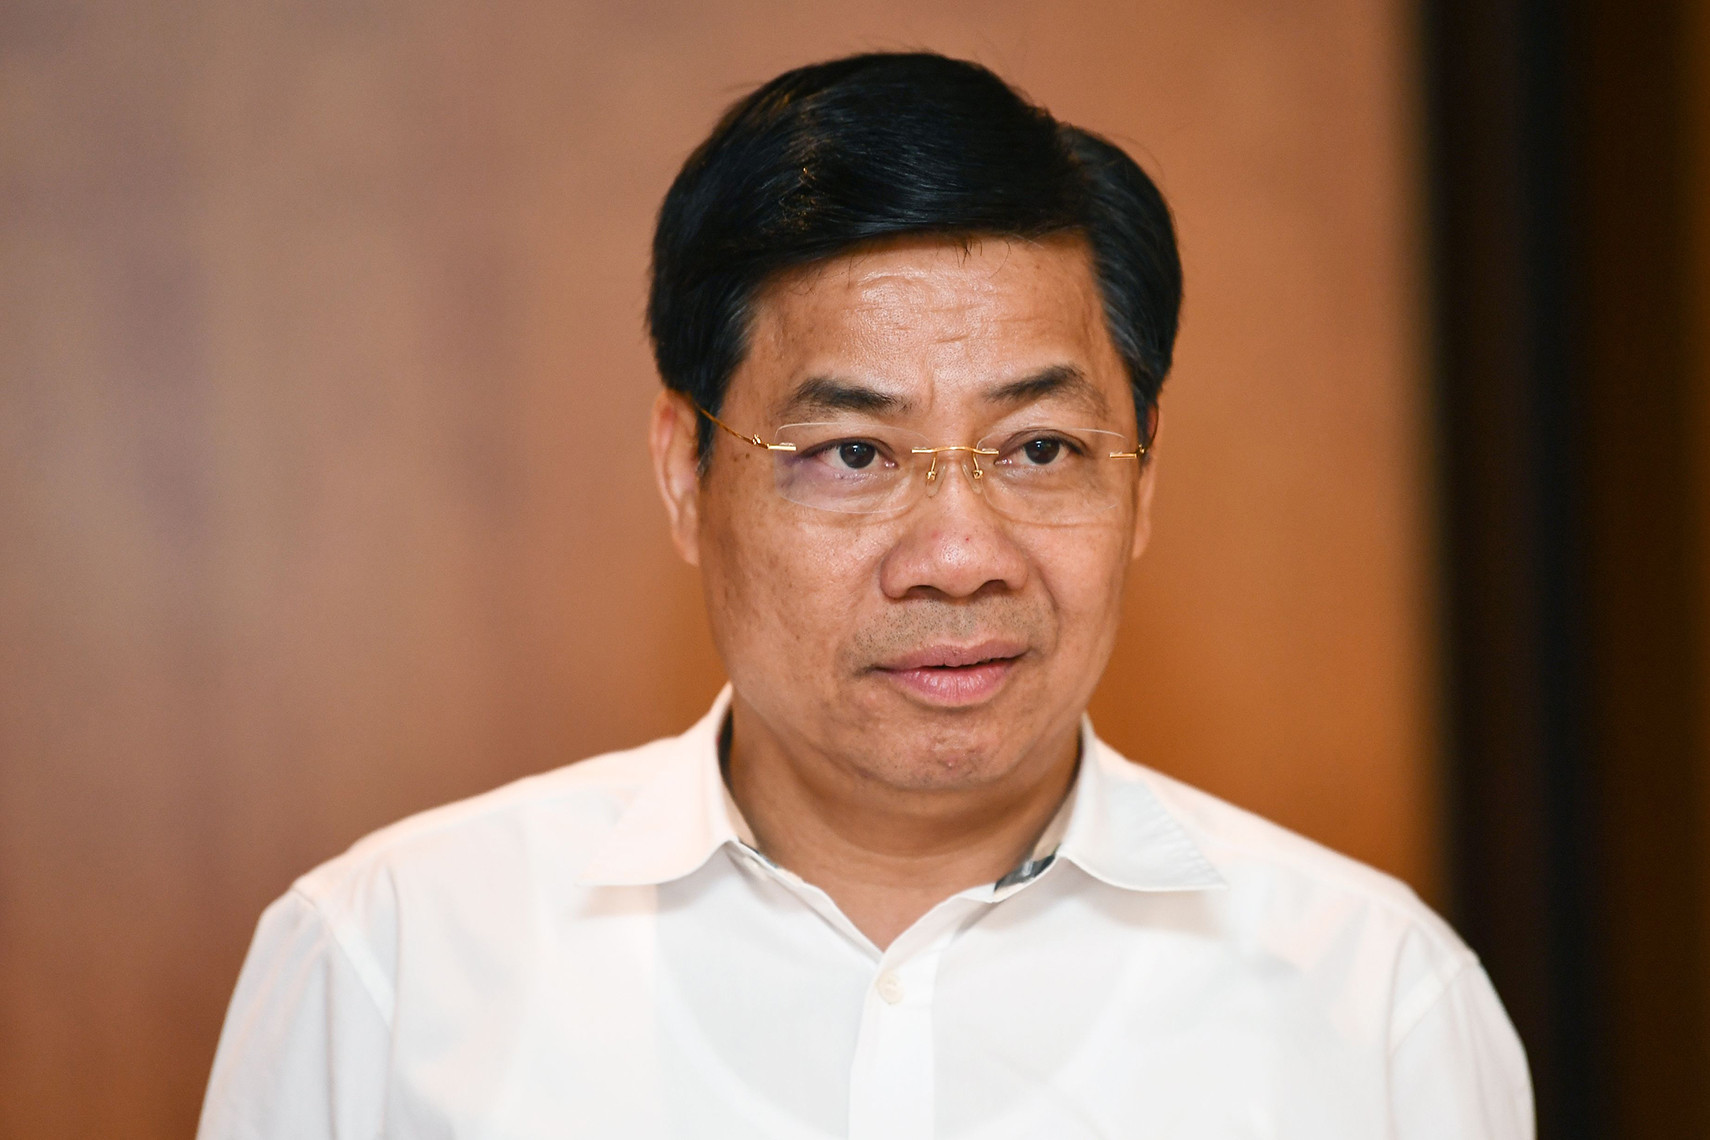 Bí thư Bắc Giang Dương Văn Thái bị tạm đình chỉ nhiệm vụ Đại biểu Quốc hội